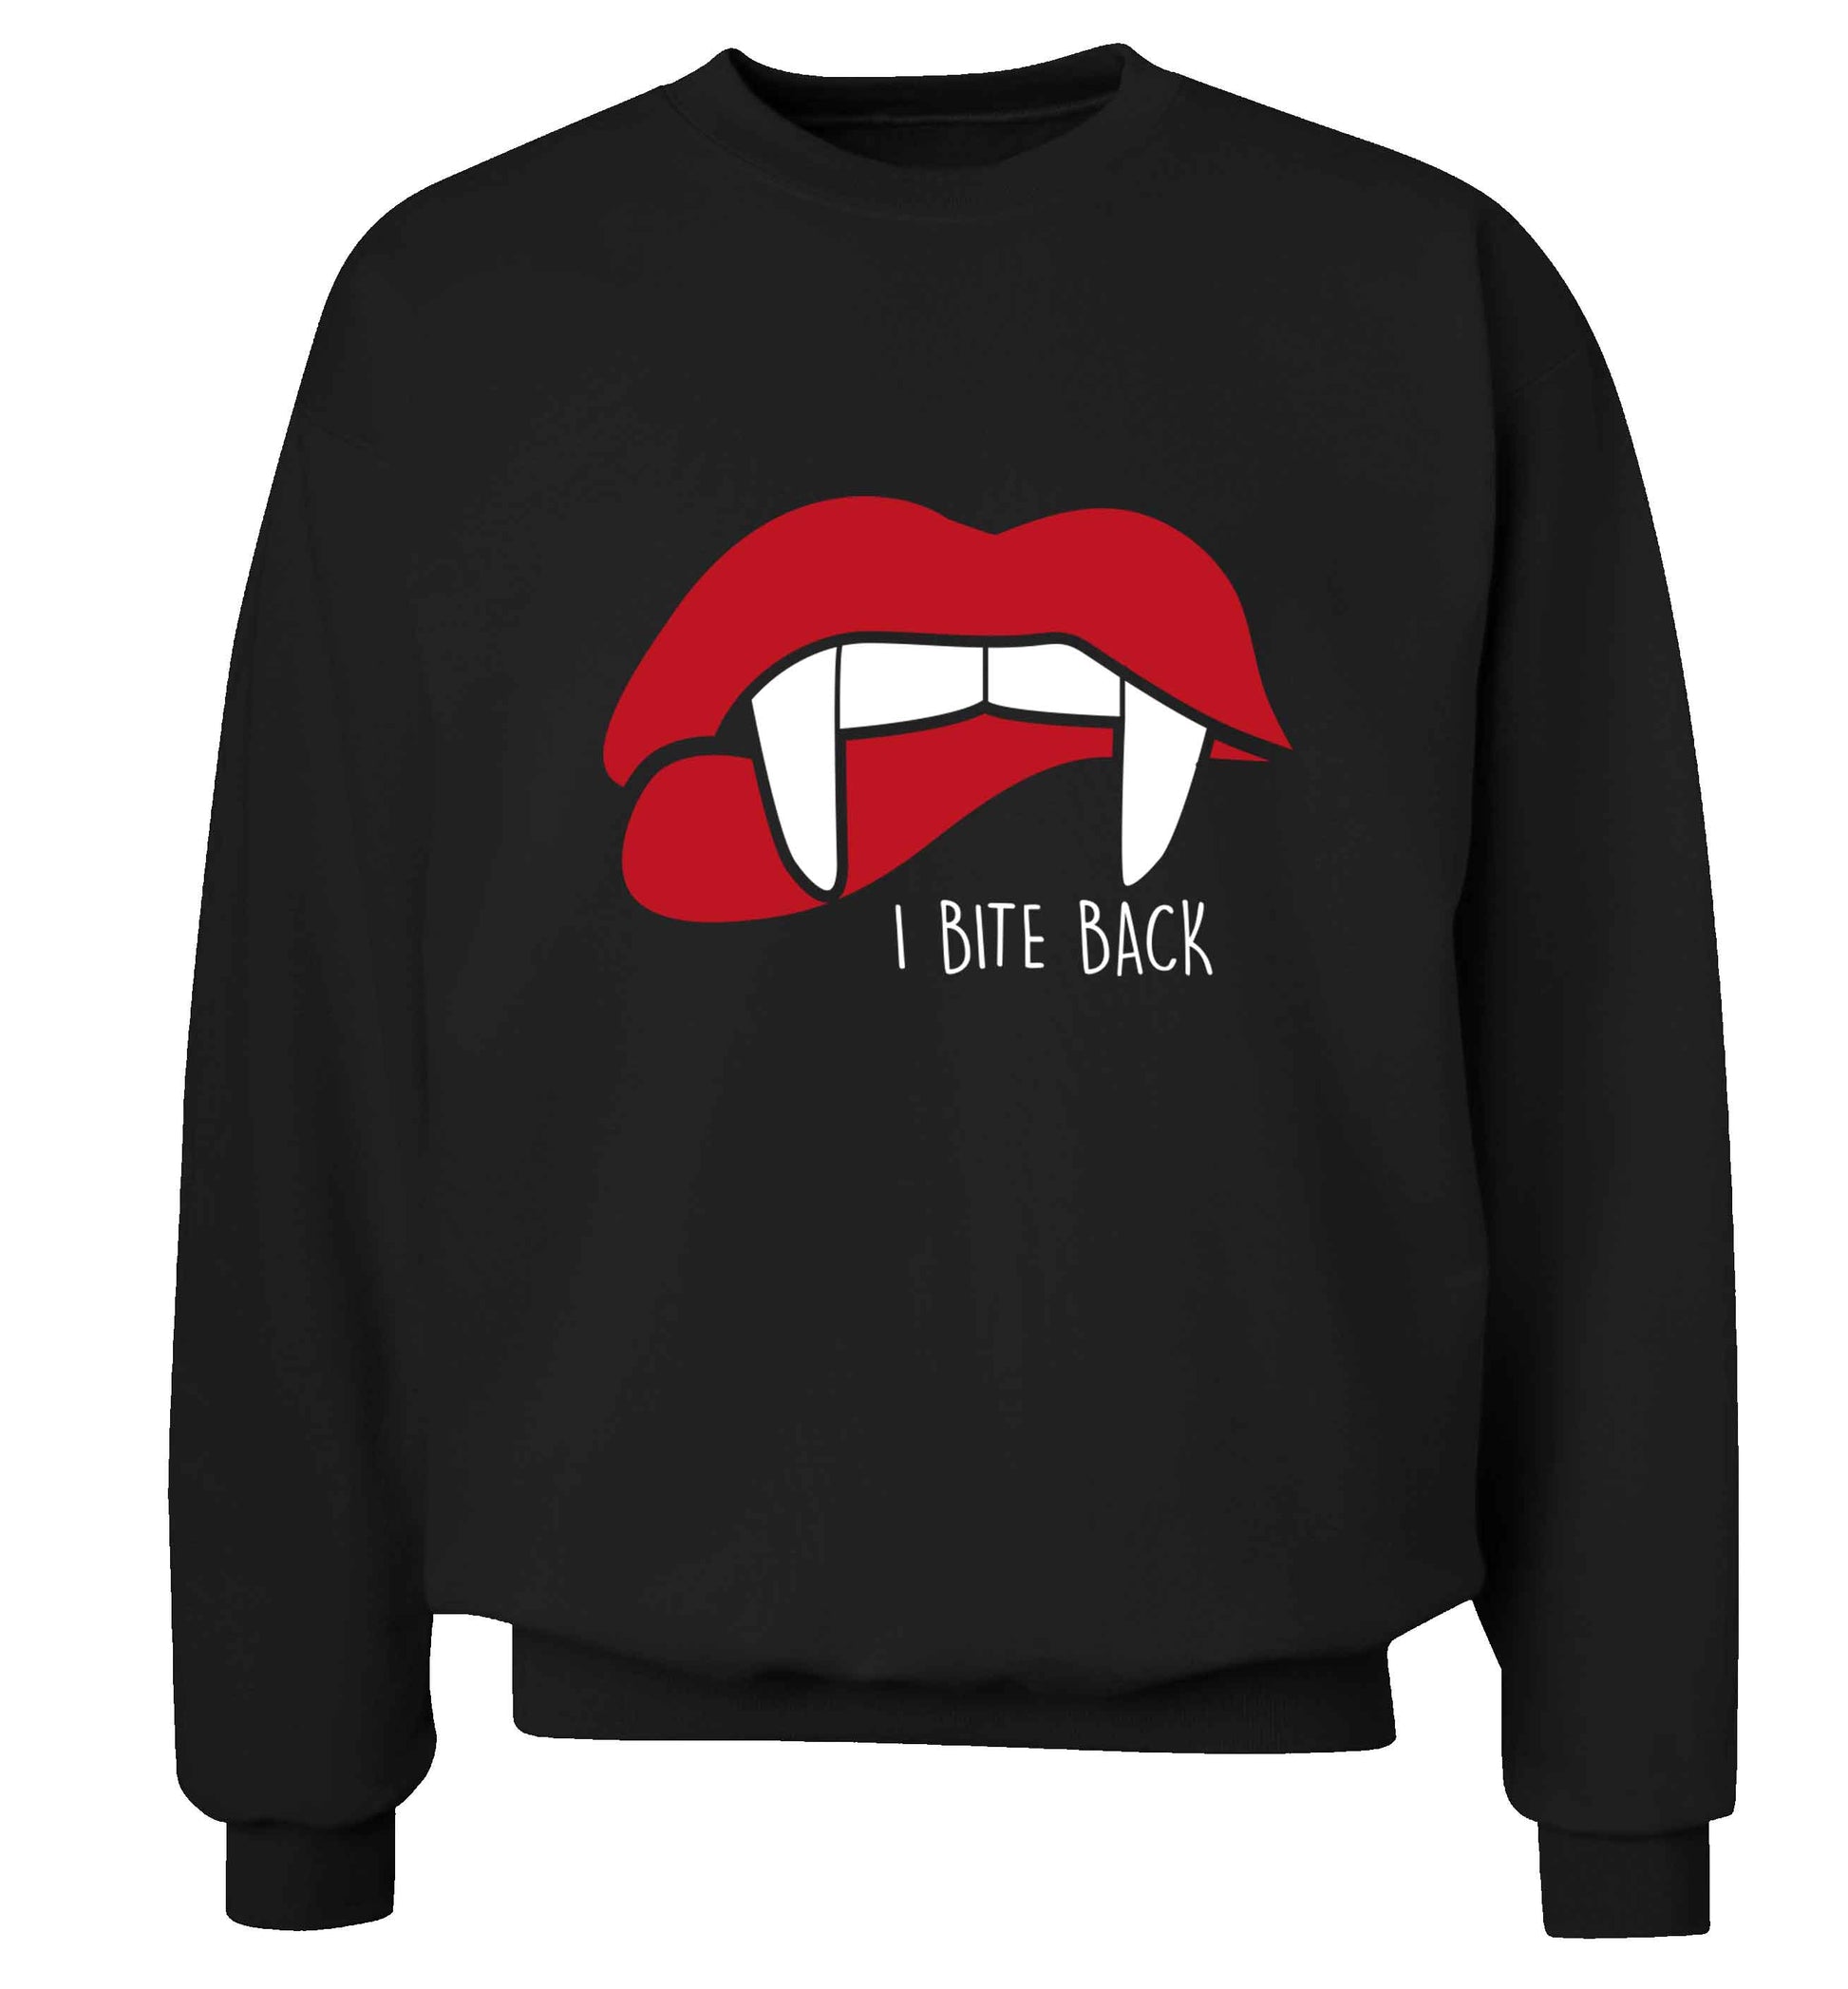 I bite back adult's unisex black sweater 2XL